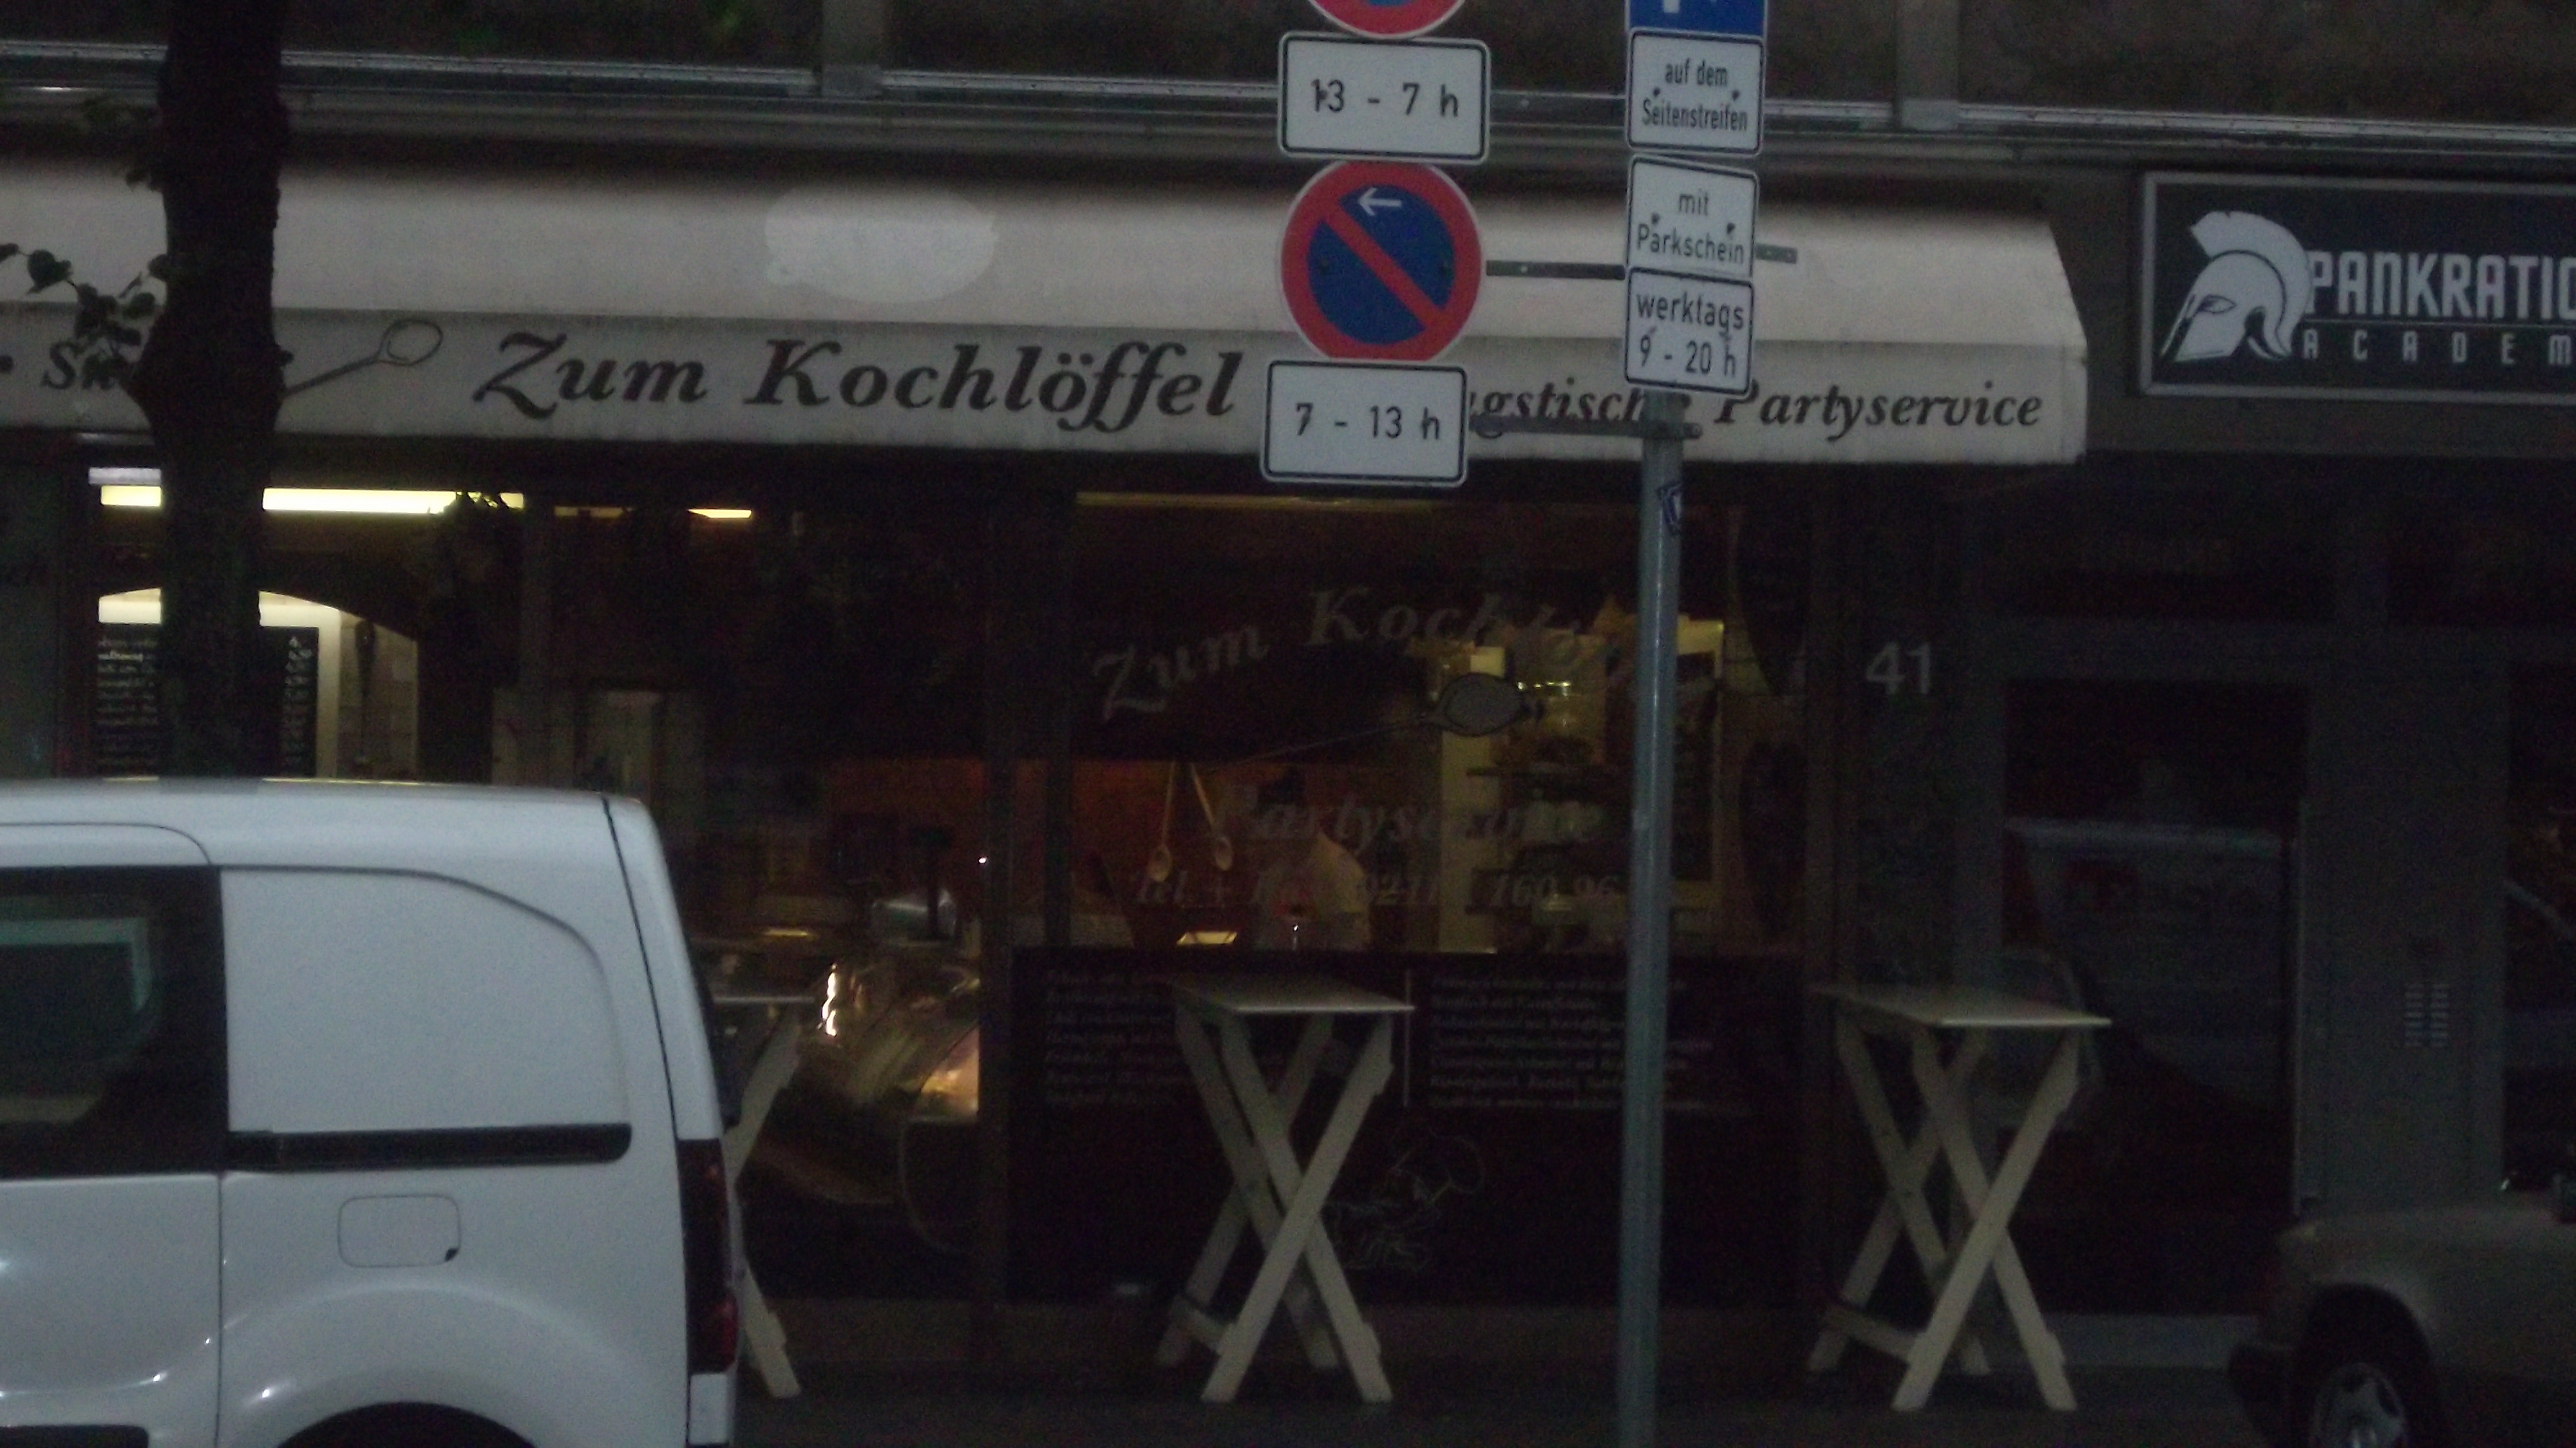 Bild 2 Zum Kochlöffel in Düsseldorf